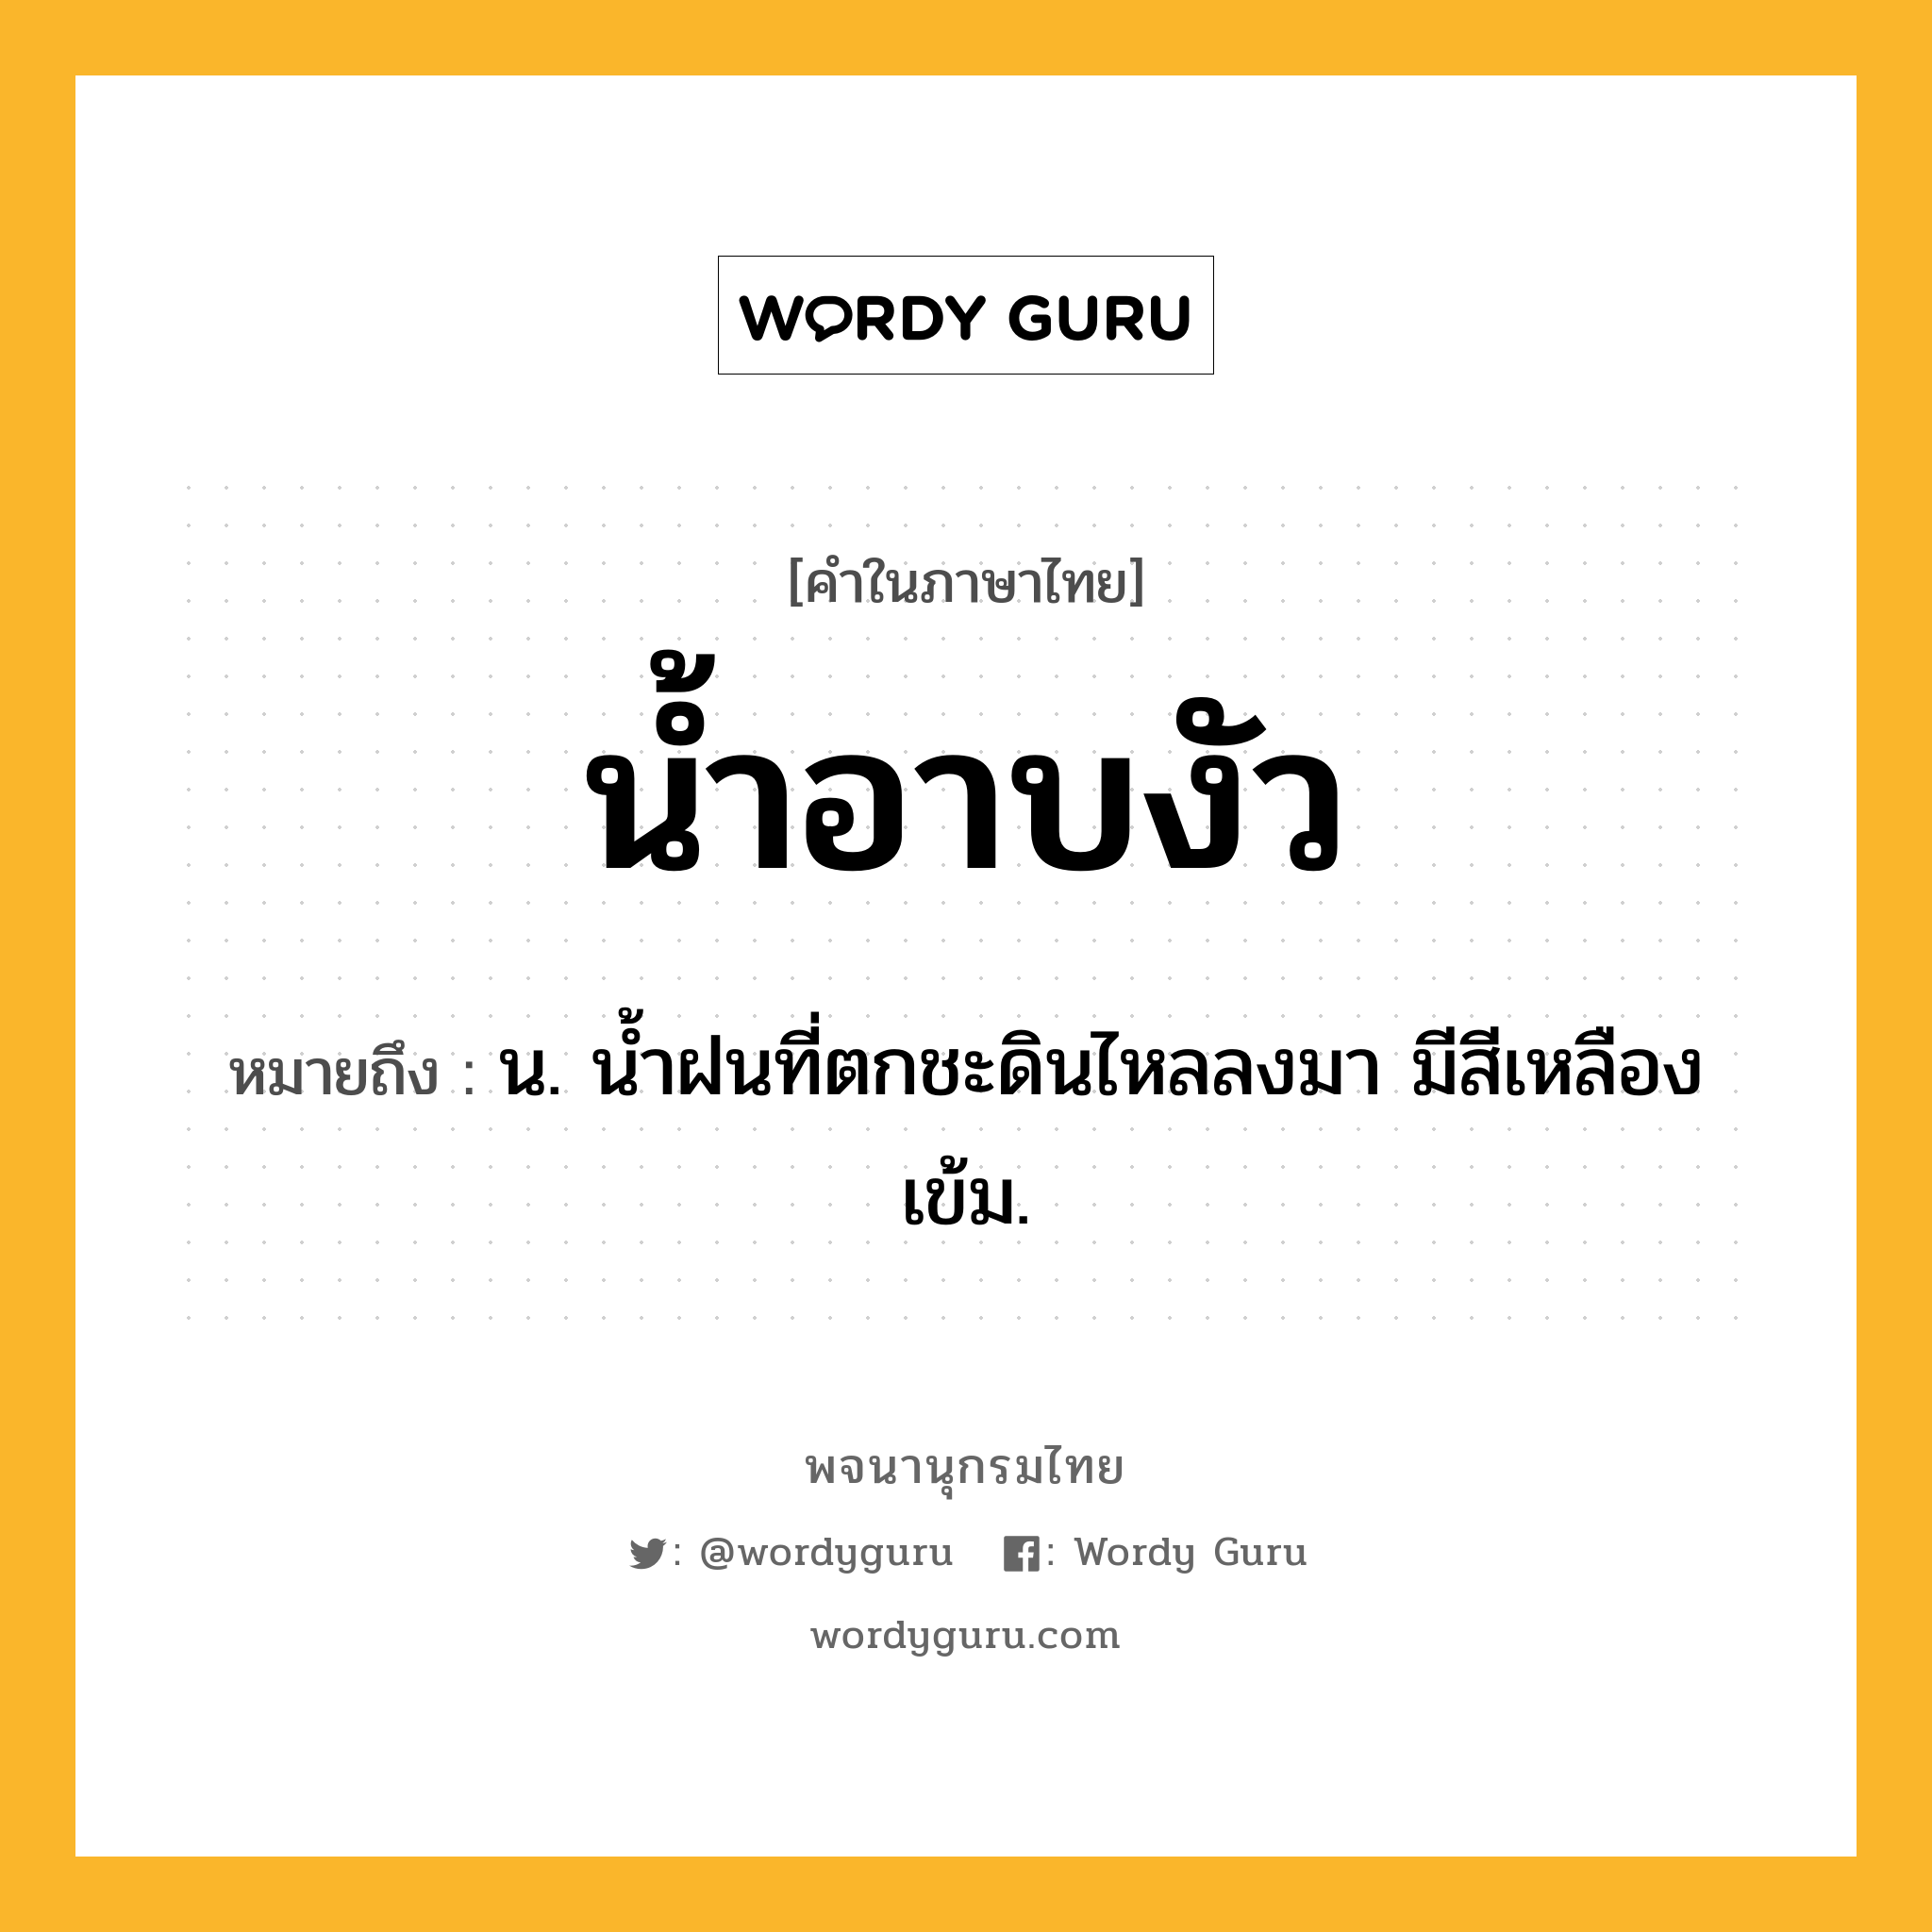 น้ำอาบงัว ความหมาย หมายถึงอะไร?, คำในภาษาไทย น้ำอาบงัว หมายถึง น. นํ้าฝนที่ตกชะดินไหลลงมา มีสีเหลืองเข้ม.